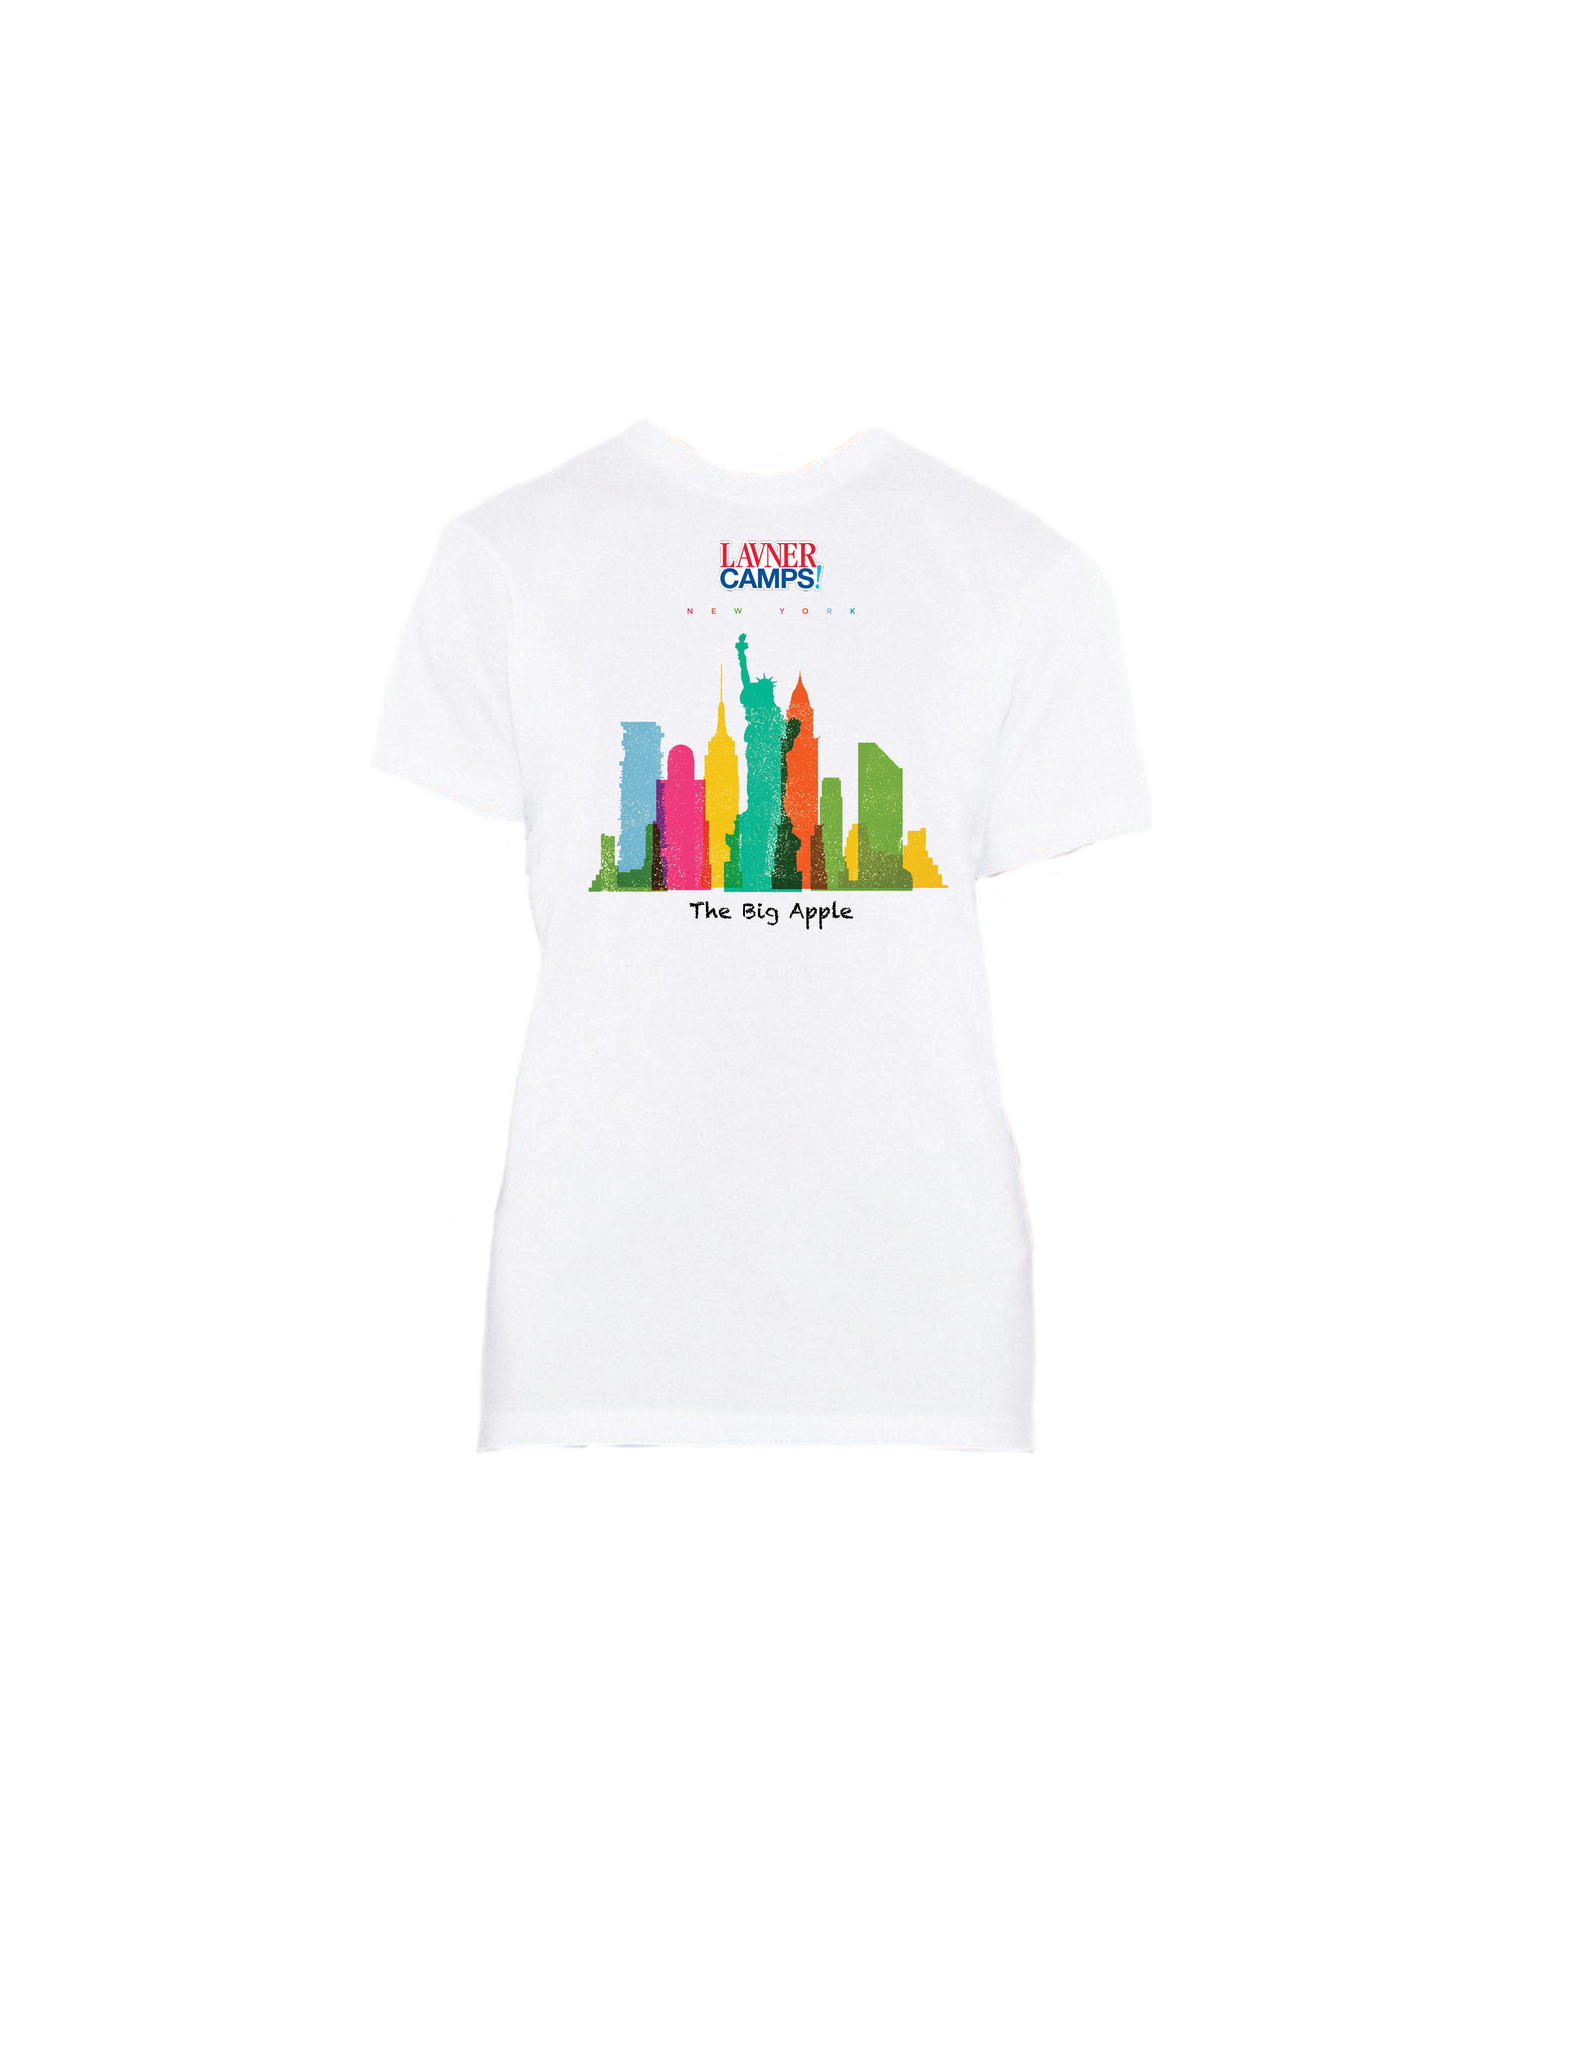 NY Skyline T-Shirt (Youth)